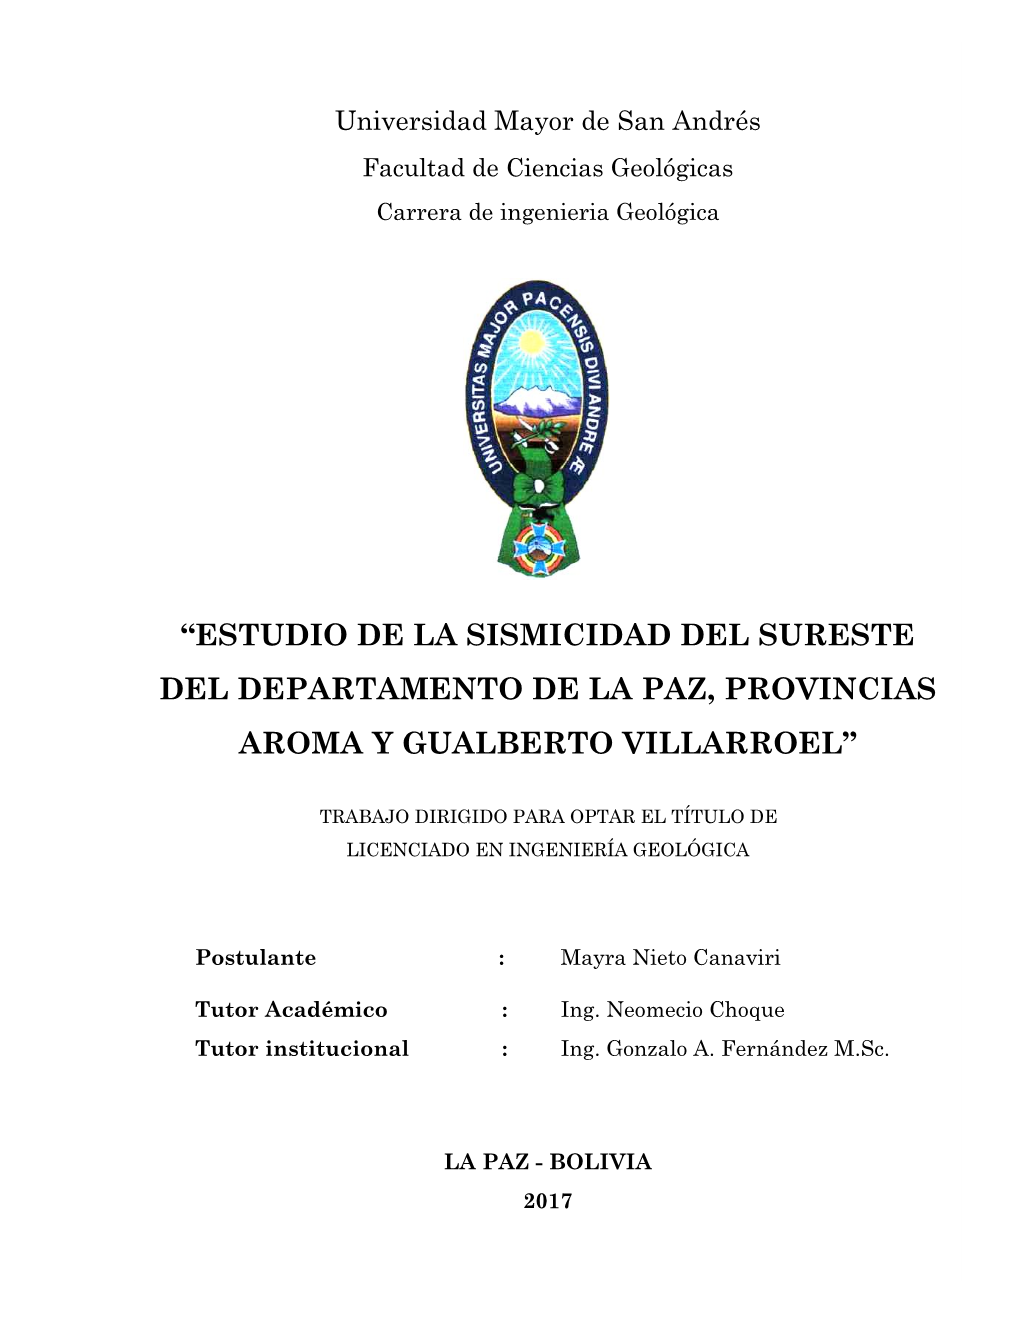 “Estudio De La Sismicidad Del Sureste Del Departamento De La Paz, Provincias Aroma Y Gualberto Villarroel”